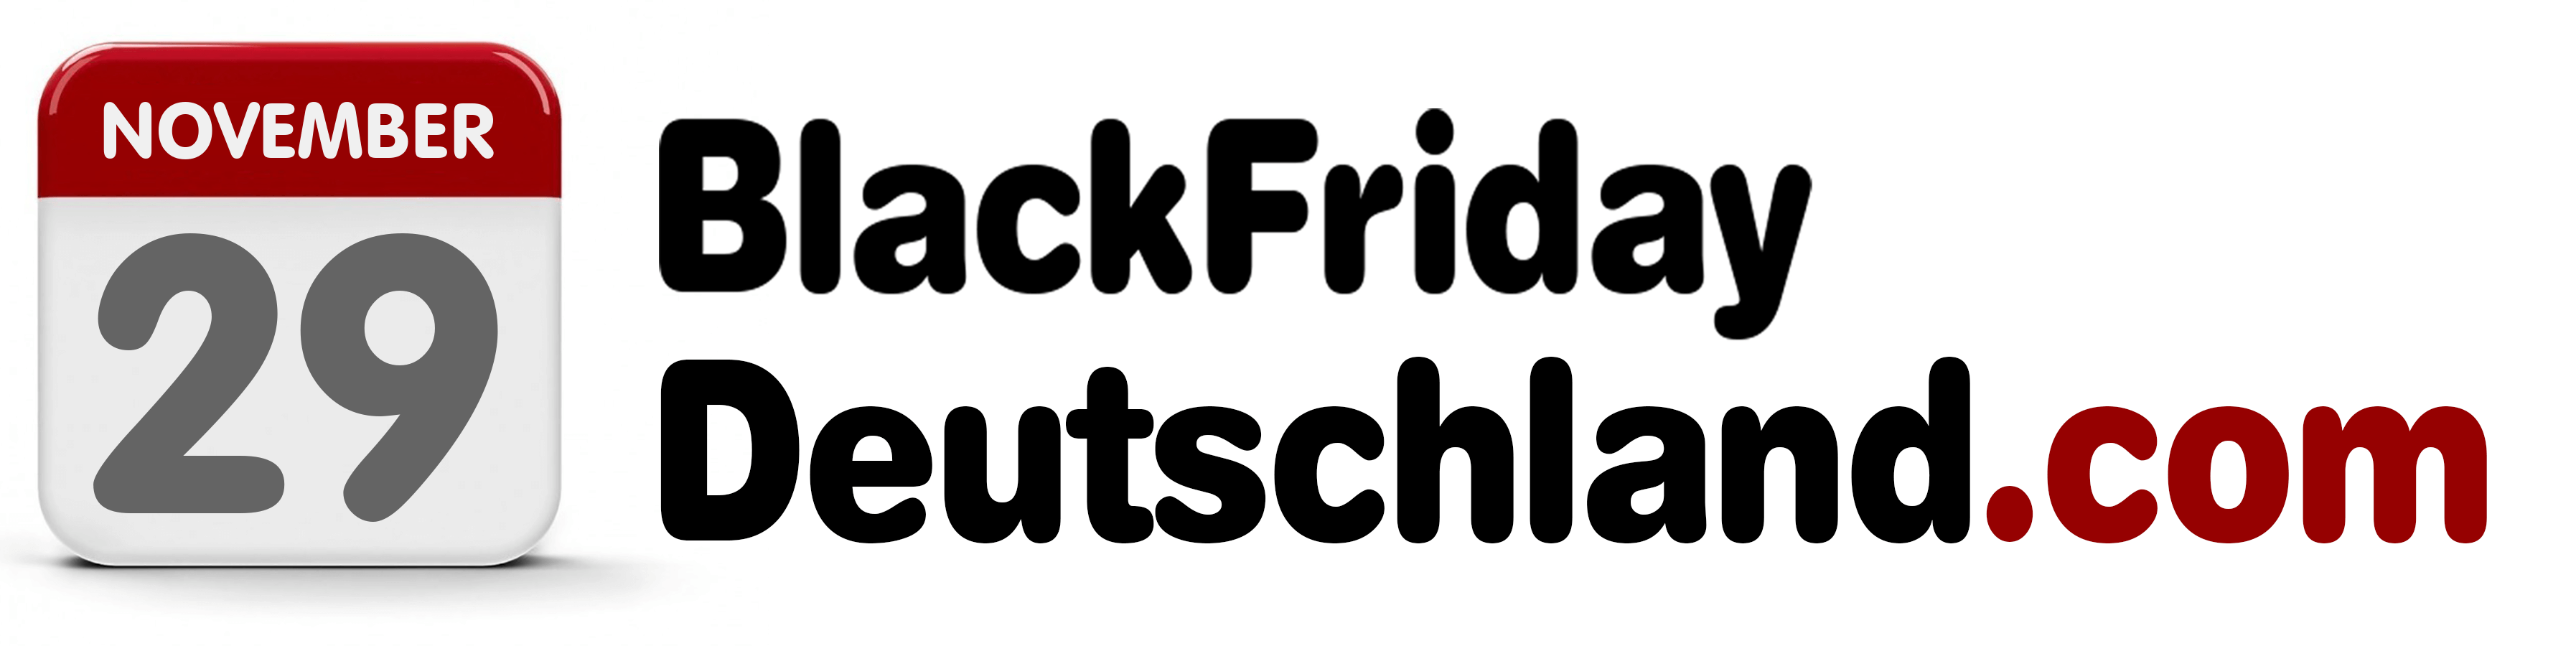 Black Friday 2020 Deutschland